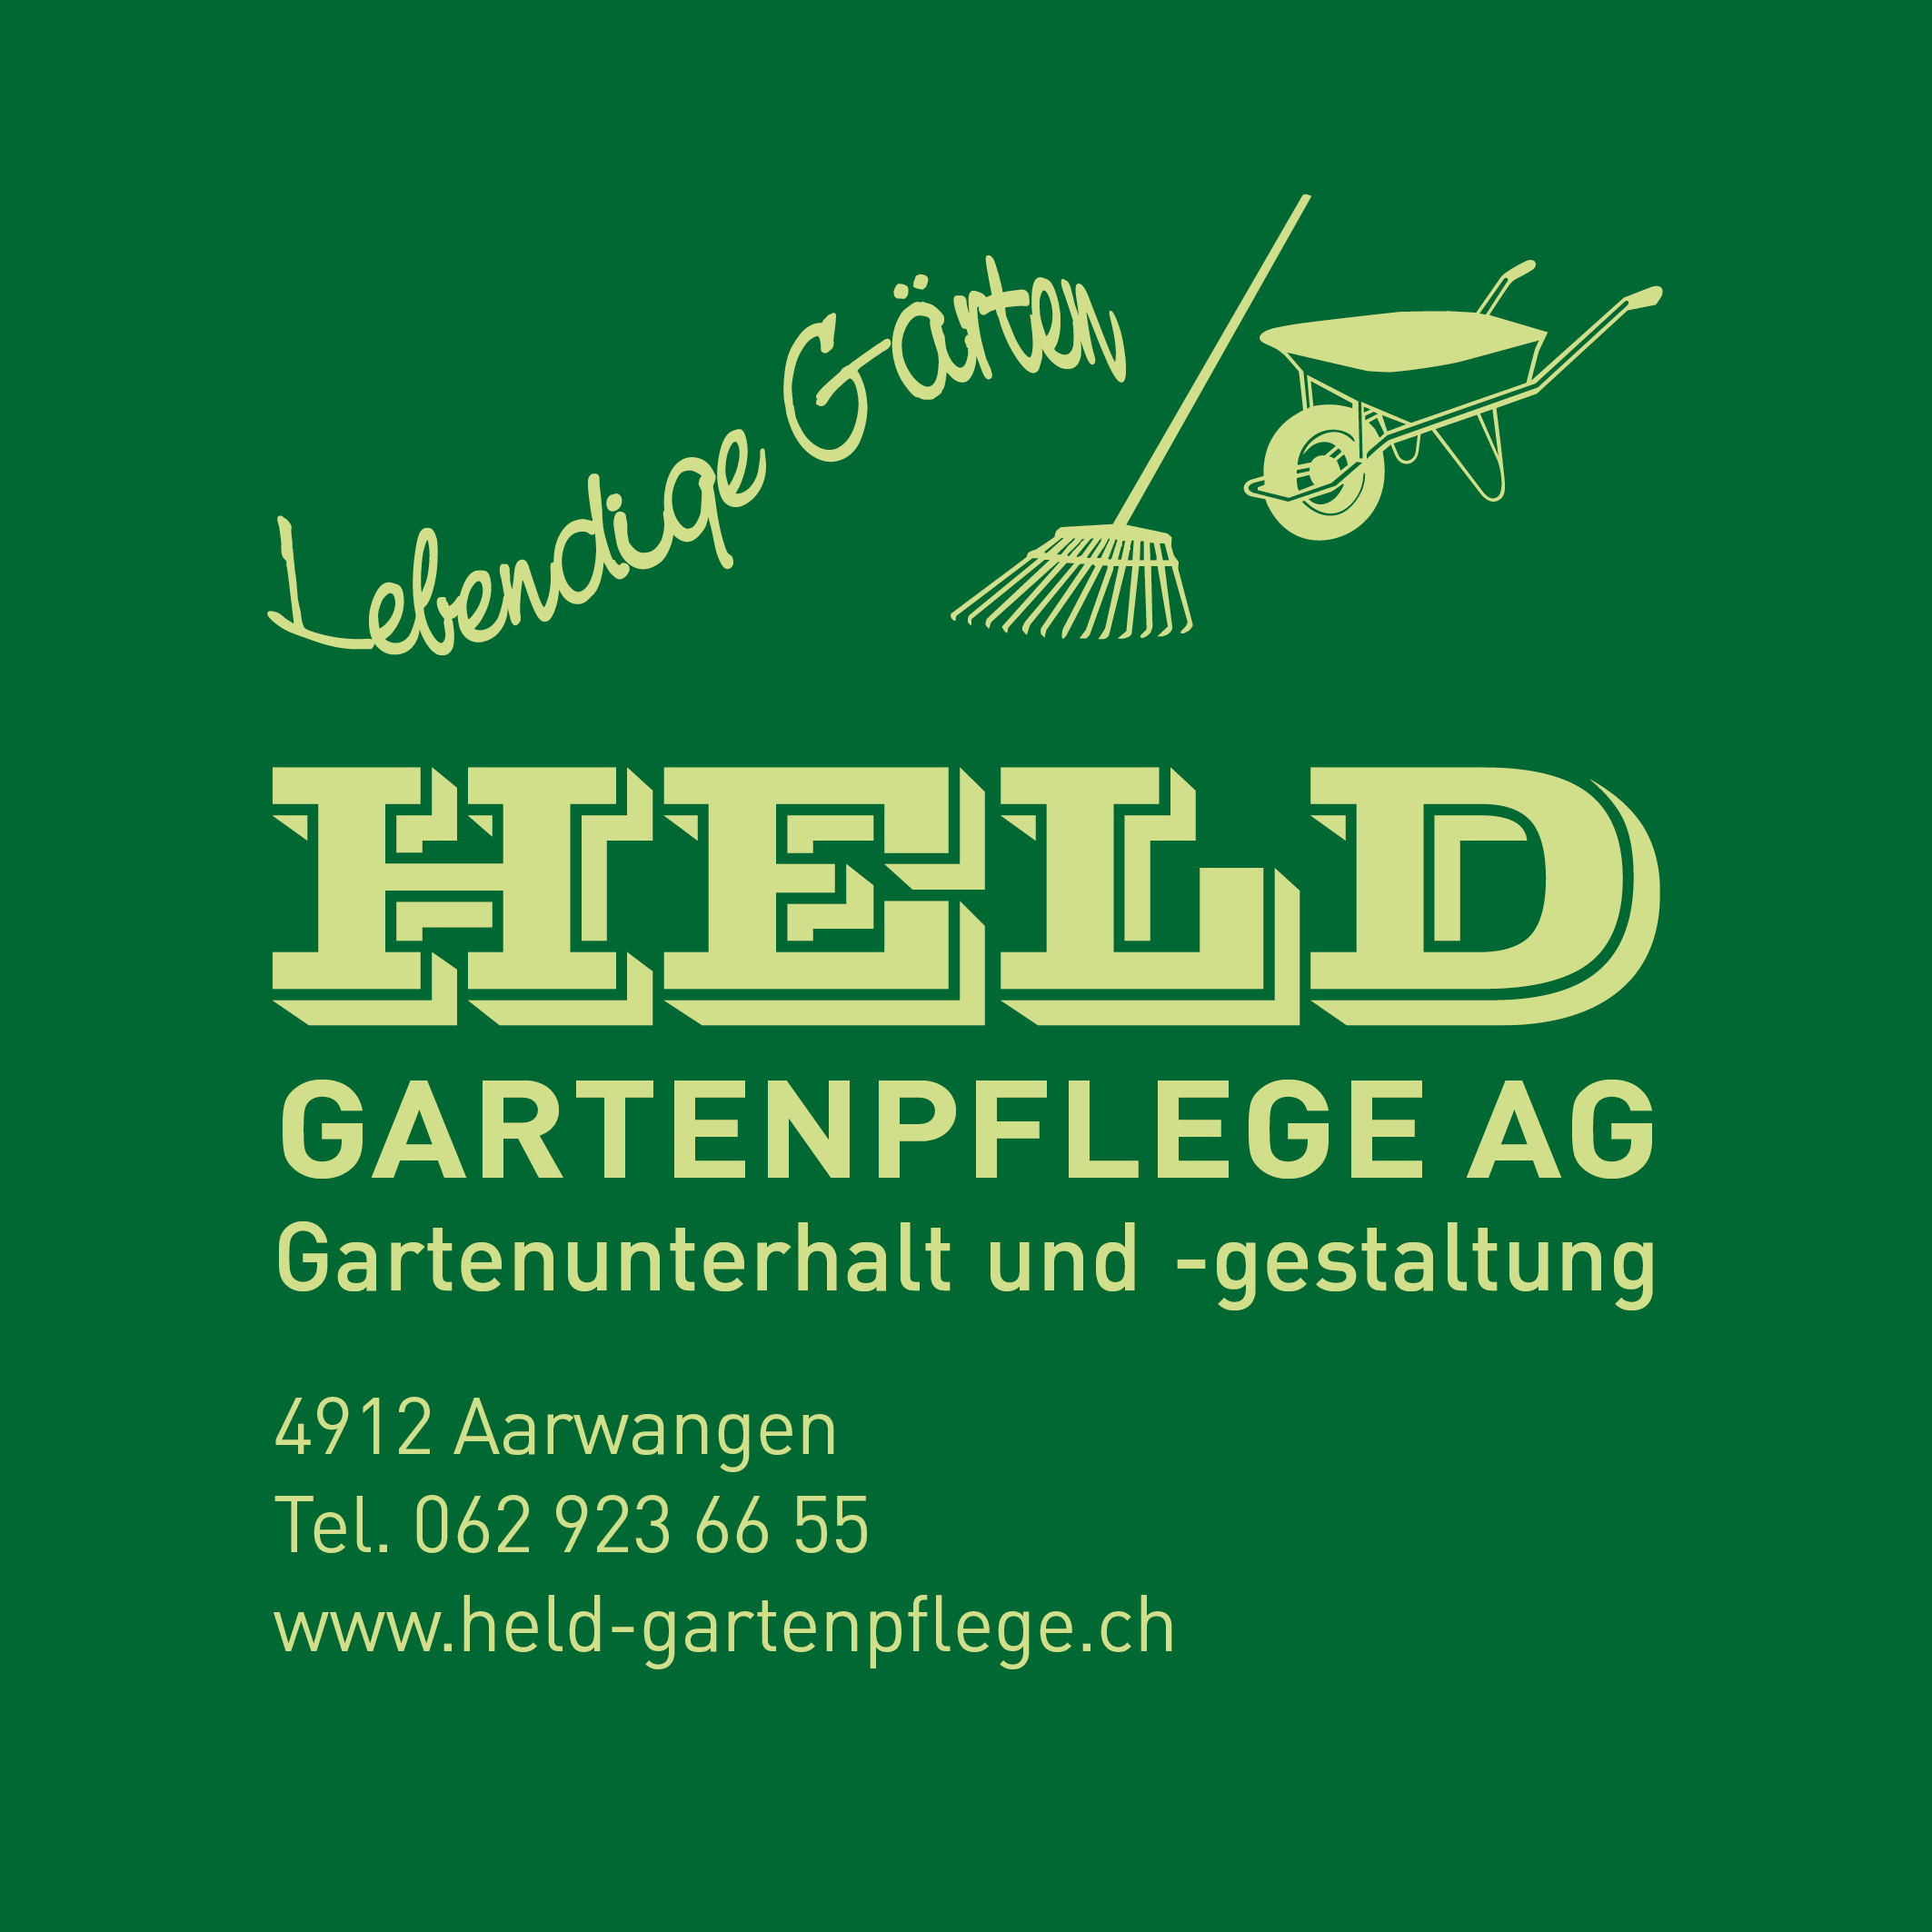 (c) Held-gartenpflege.ch